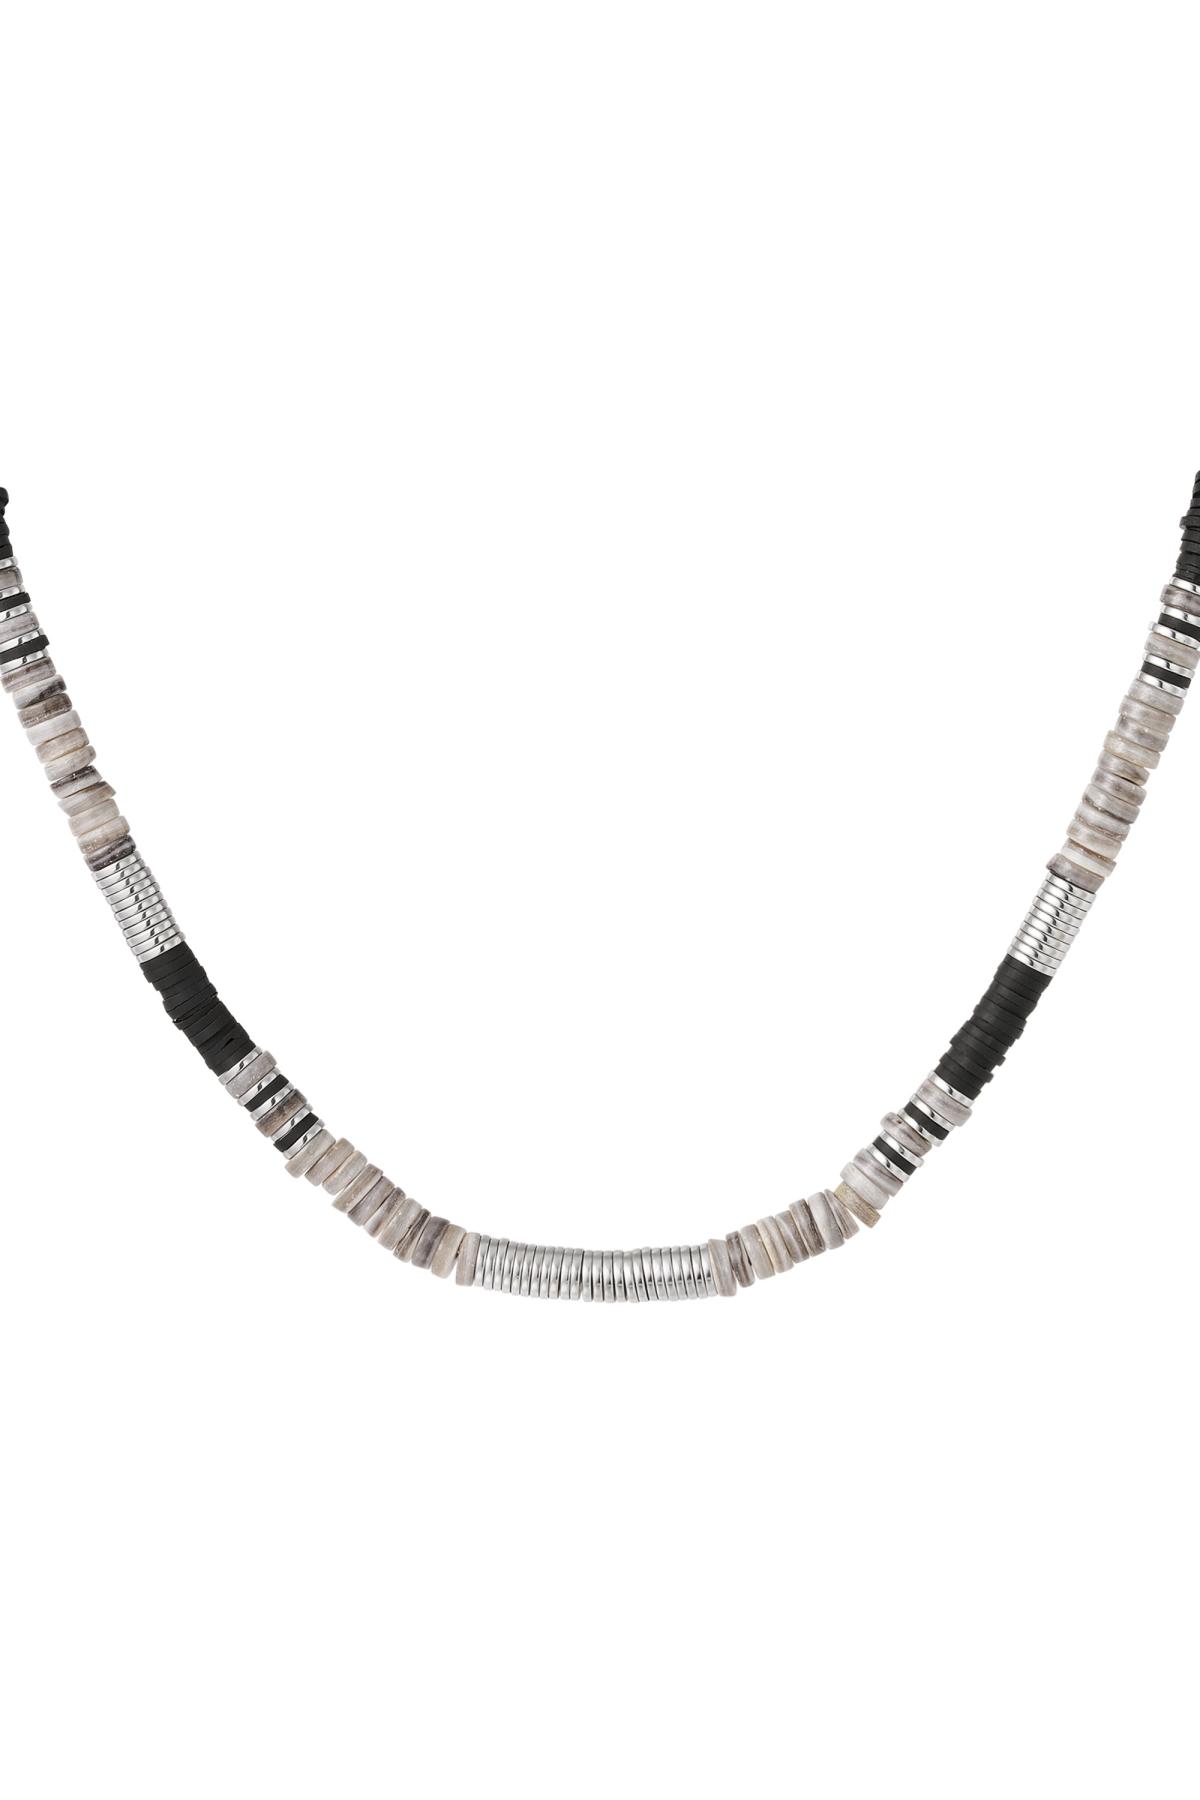 Halskette verschiedene Perlen Grau polymer clay h5 